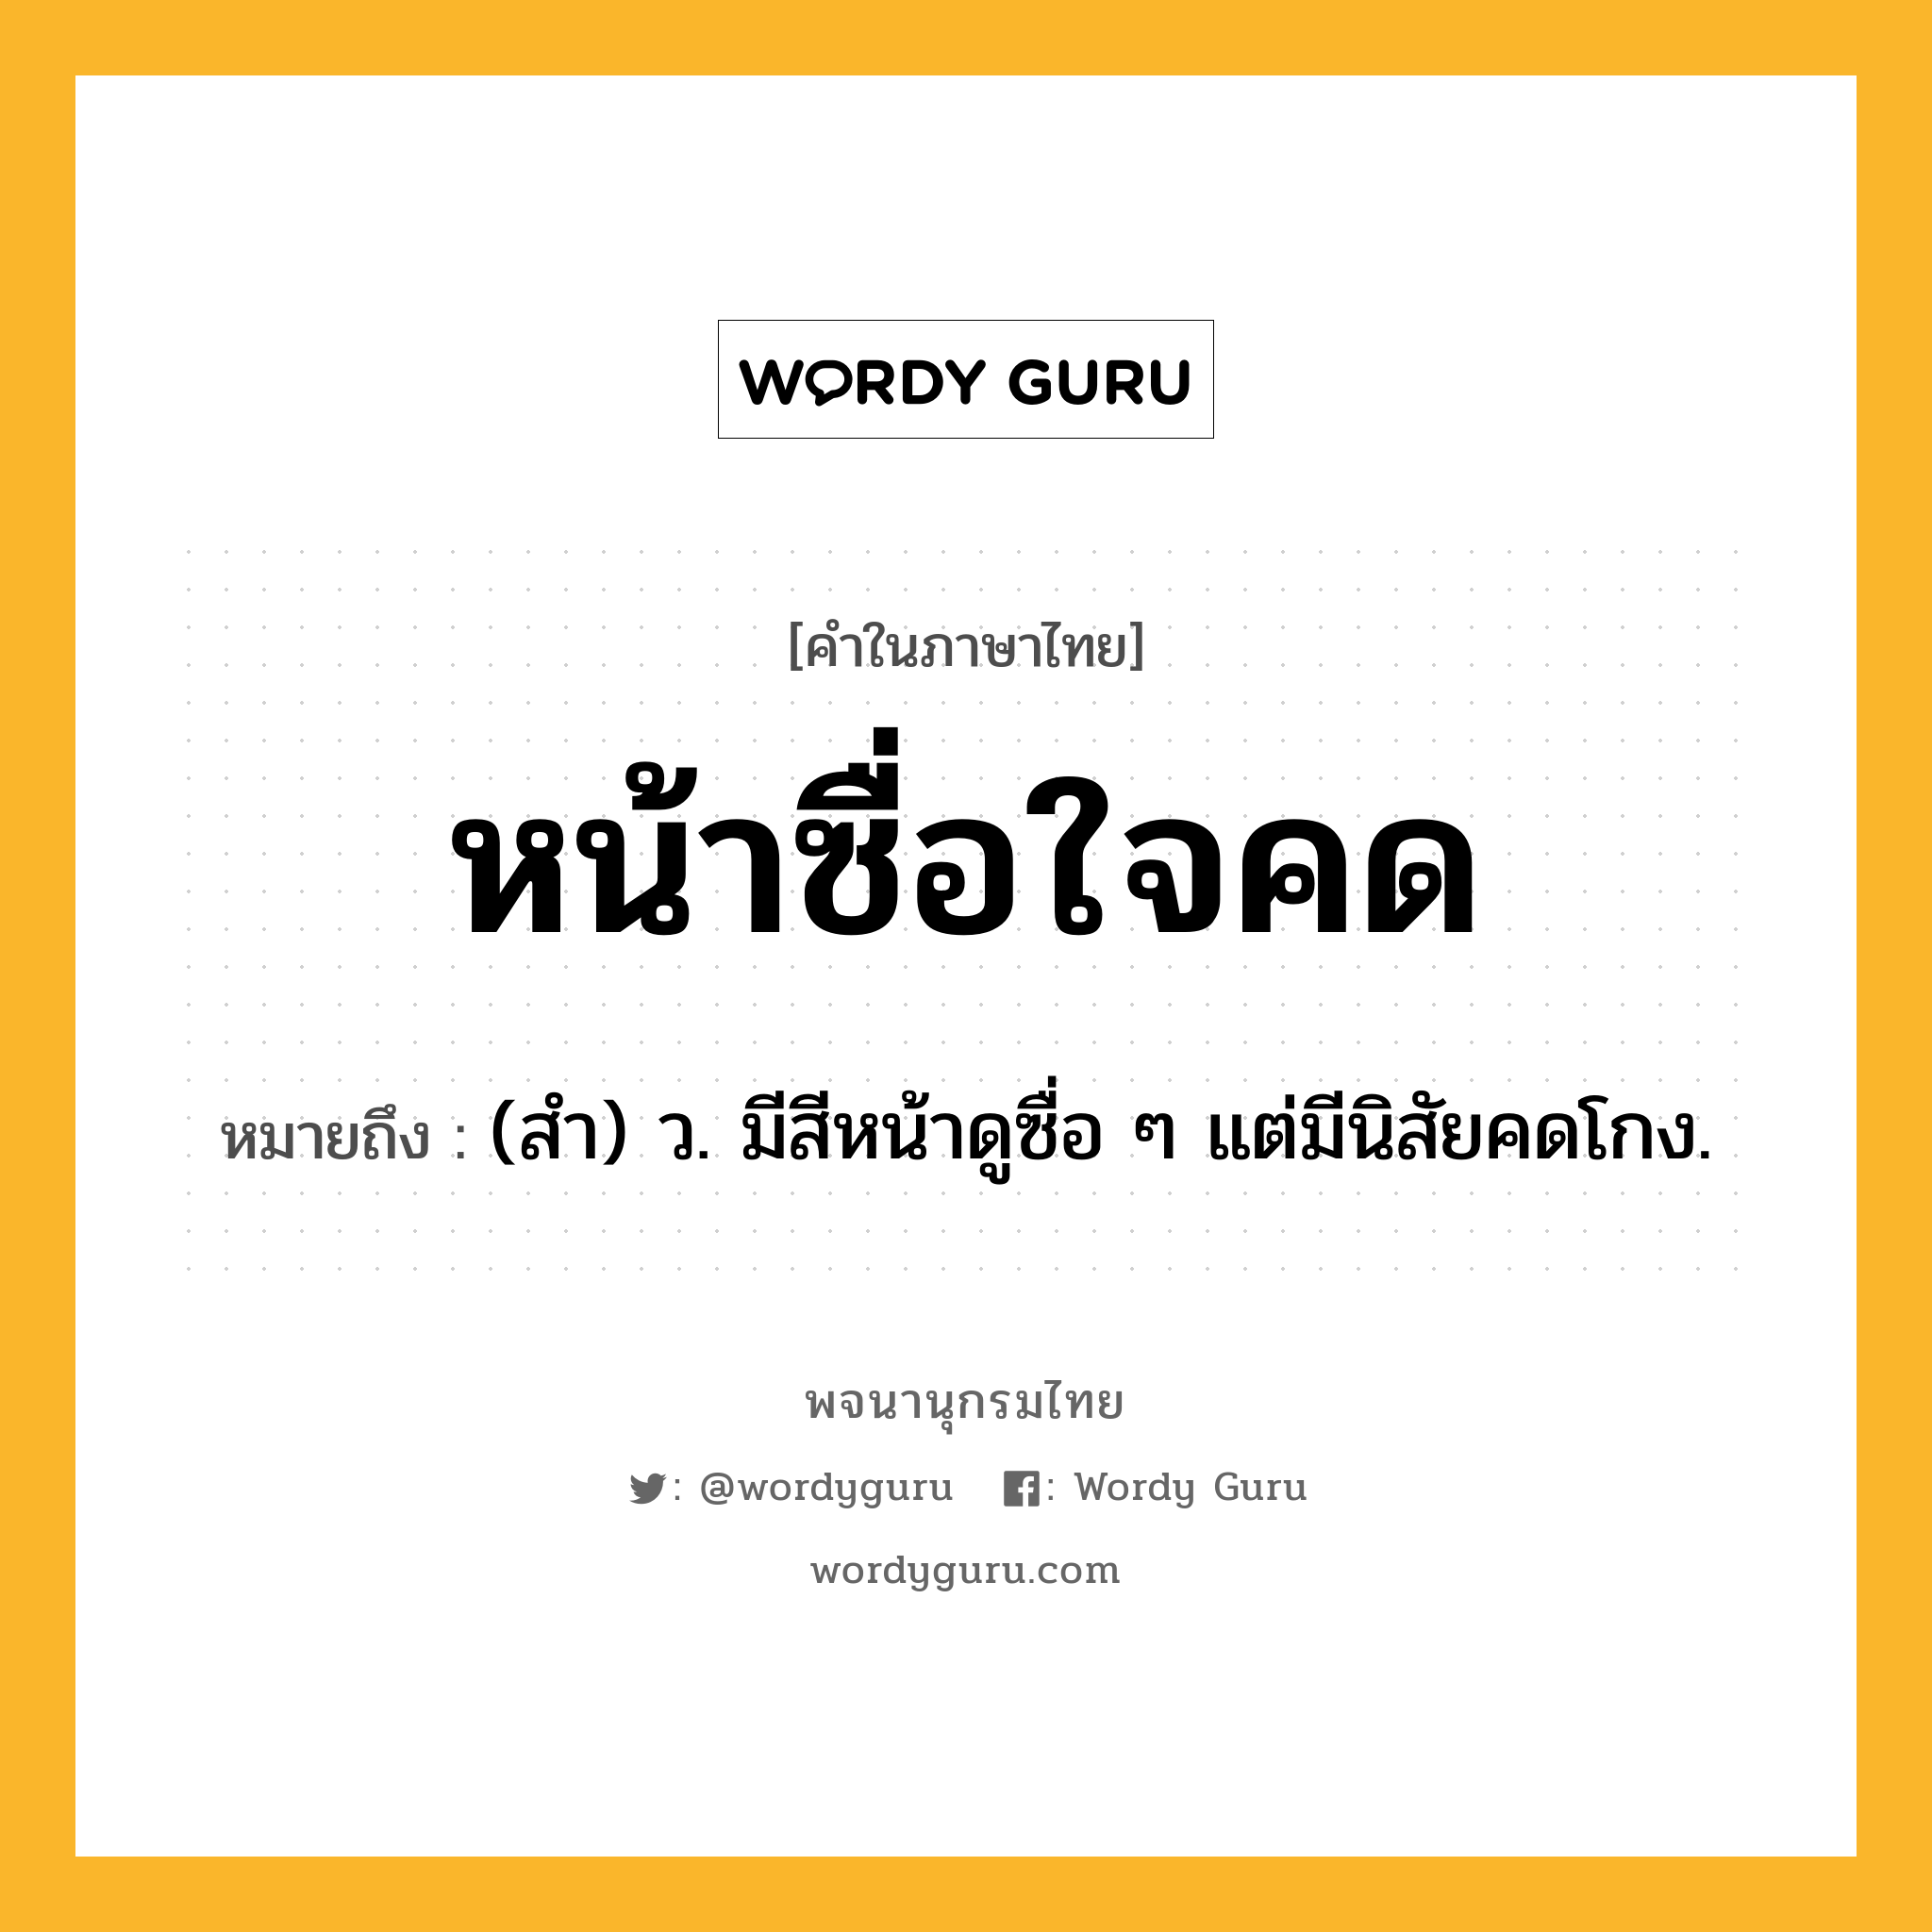 หน้าซื่อใจคด หมายถึงอะไร?, คำในภาษาไทย หน้าซื่อใจคด หมายถึง (สํา) ว. มีสีหน้าดูซื่อ ๆ แต่มีนิสัยคดโกง.